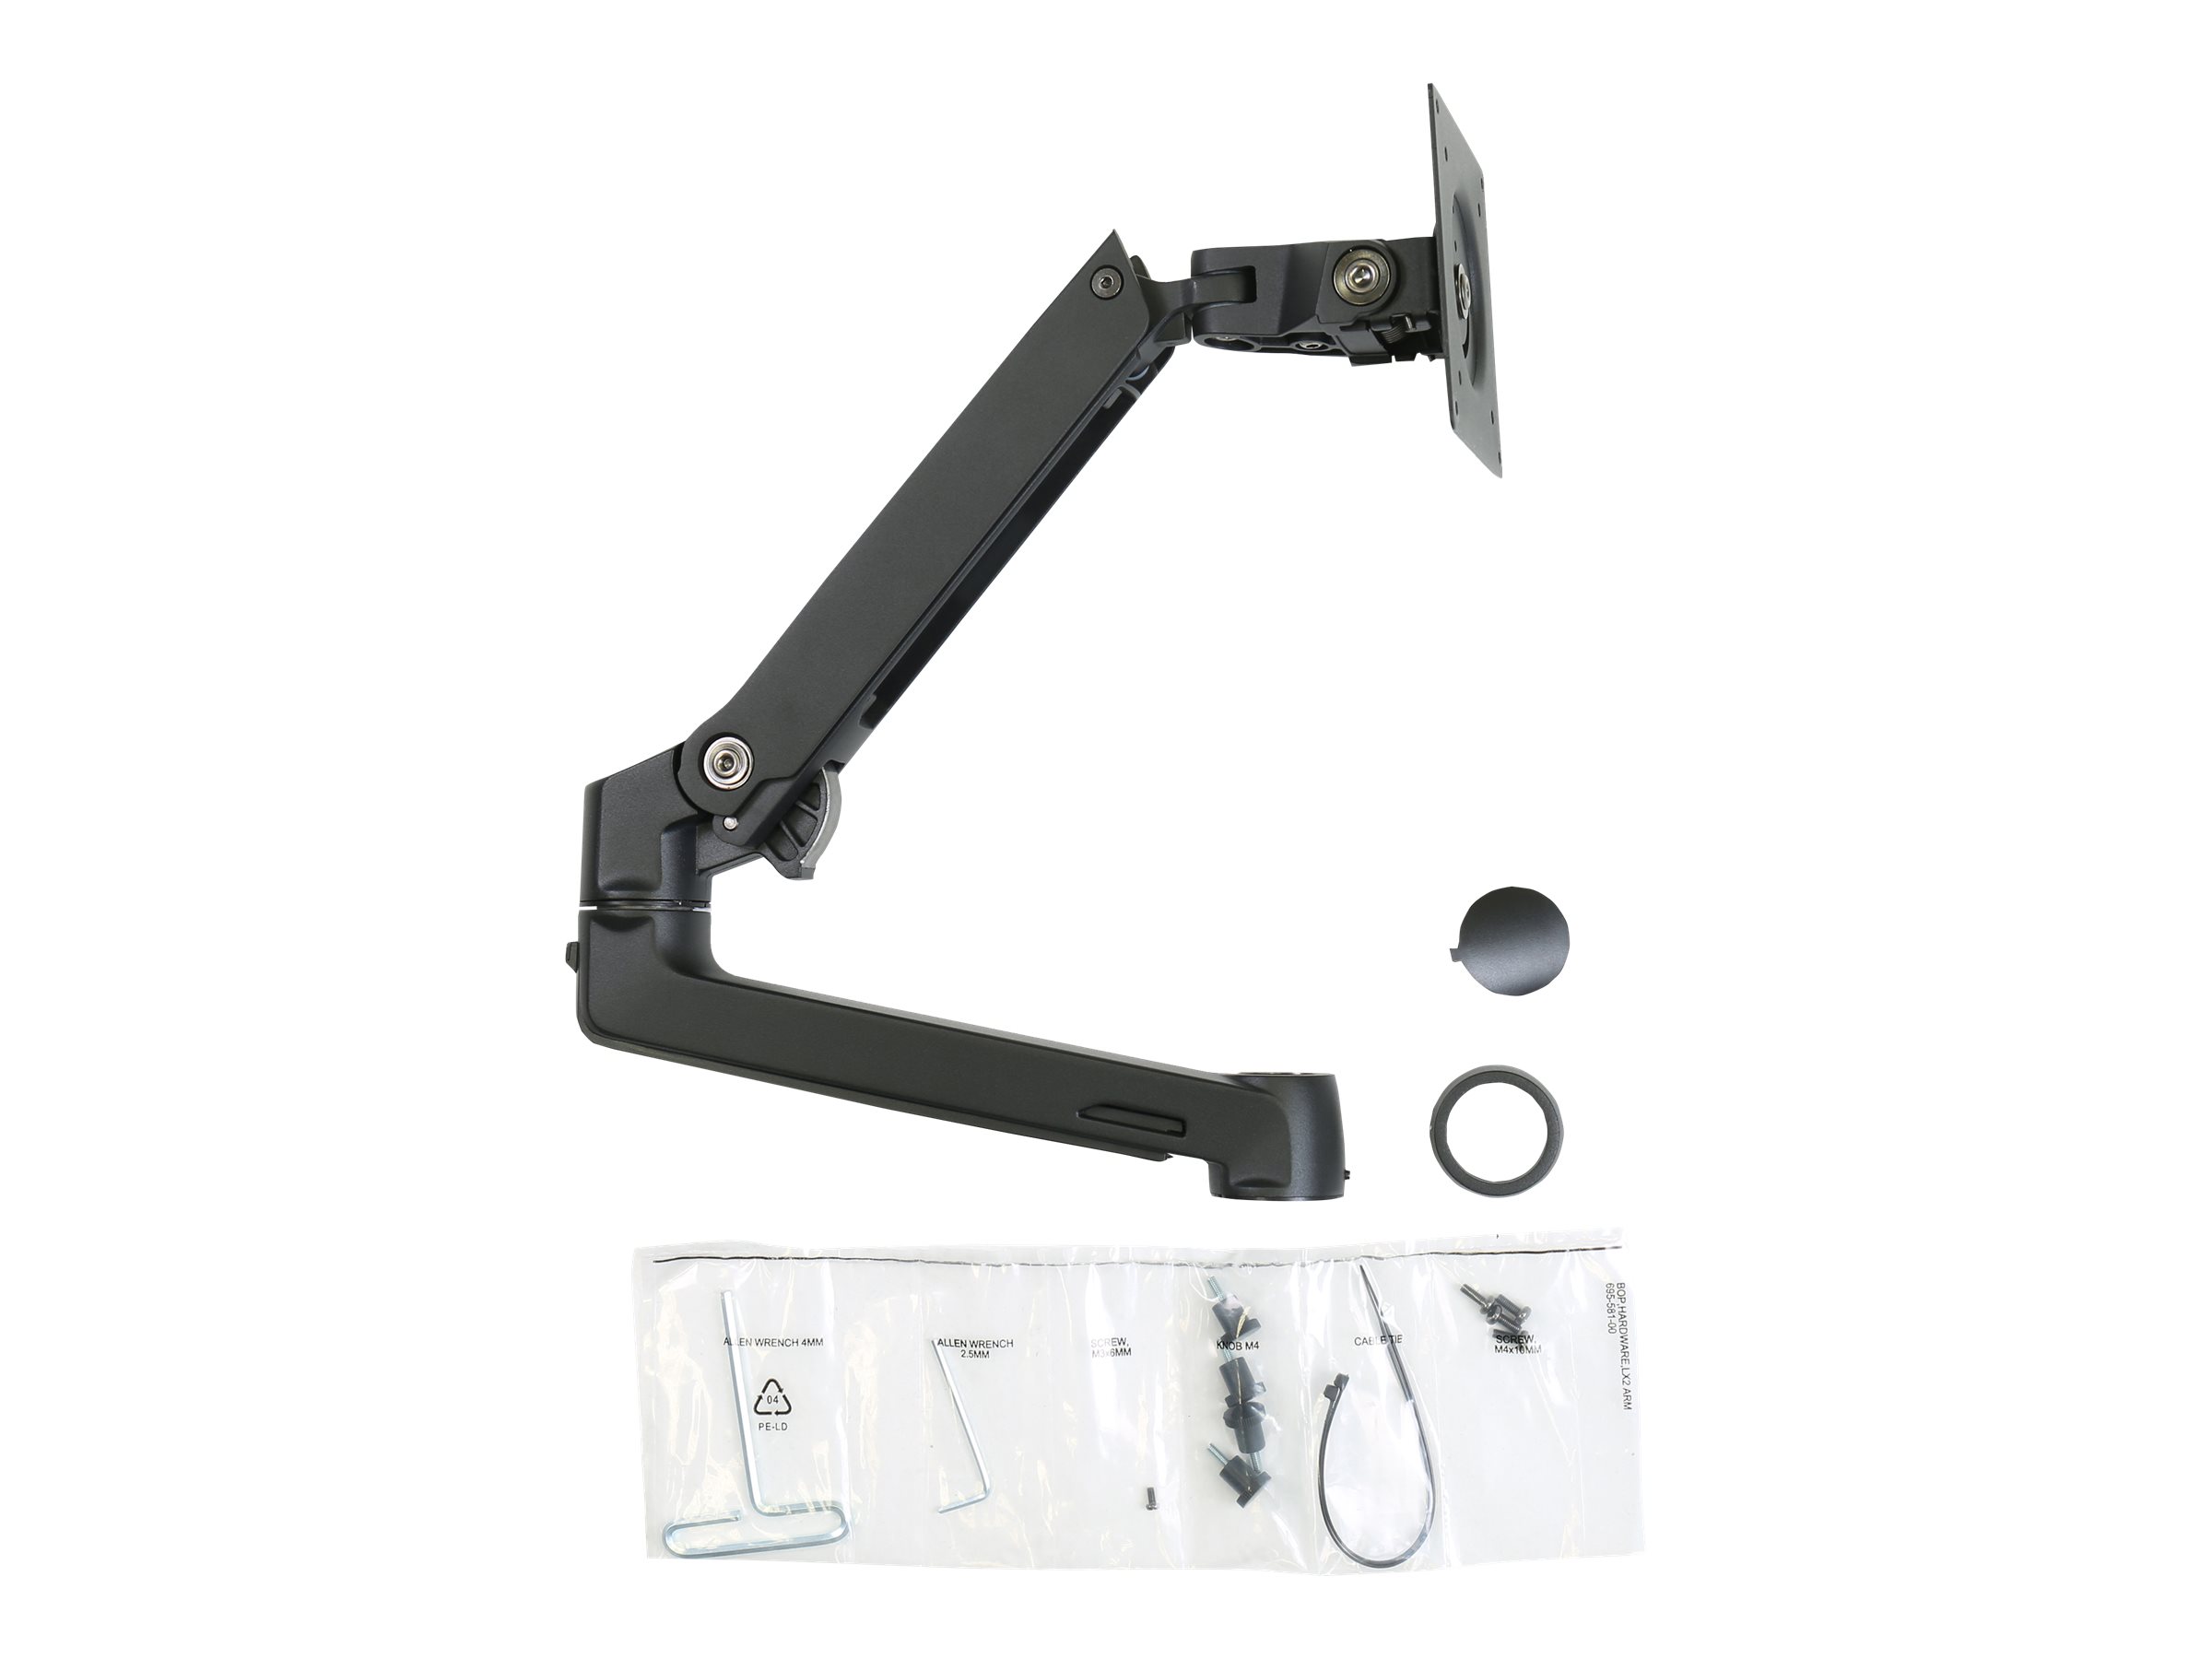 Ergotron LX - Composant de montage (bras articulé, collier de perche, extension) - Technologie brevetée Constant Force - pour Écran LCD - noir mat - pour P/N: 45-509-224, 45-537-224 - 98-130-224 - Montages pour TV et moniteur